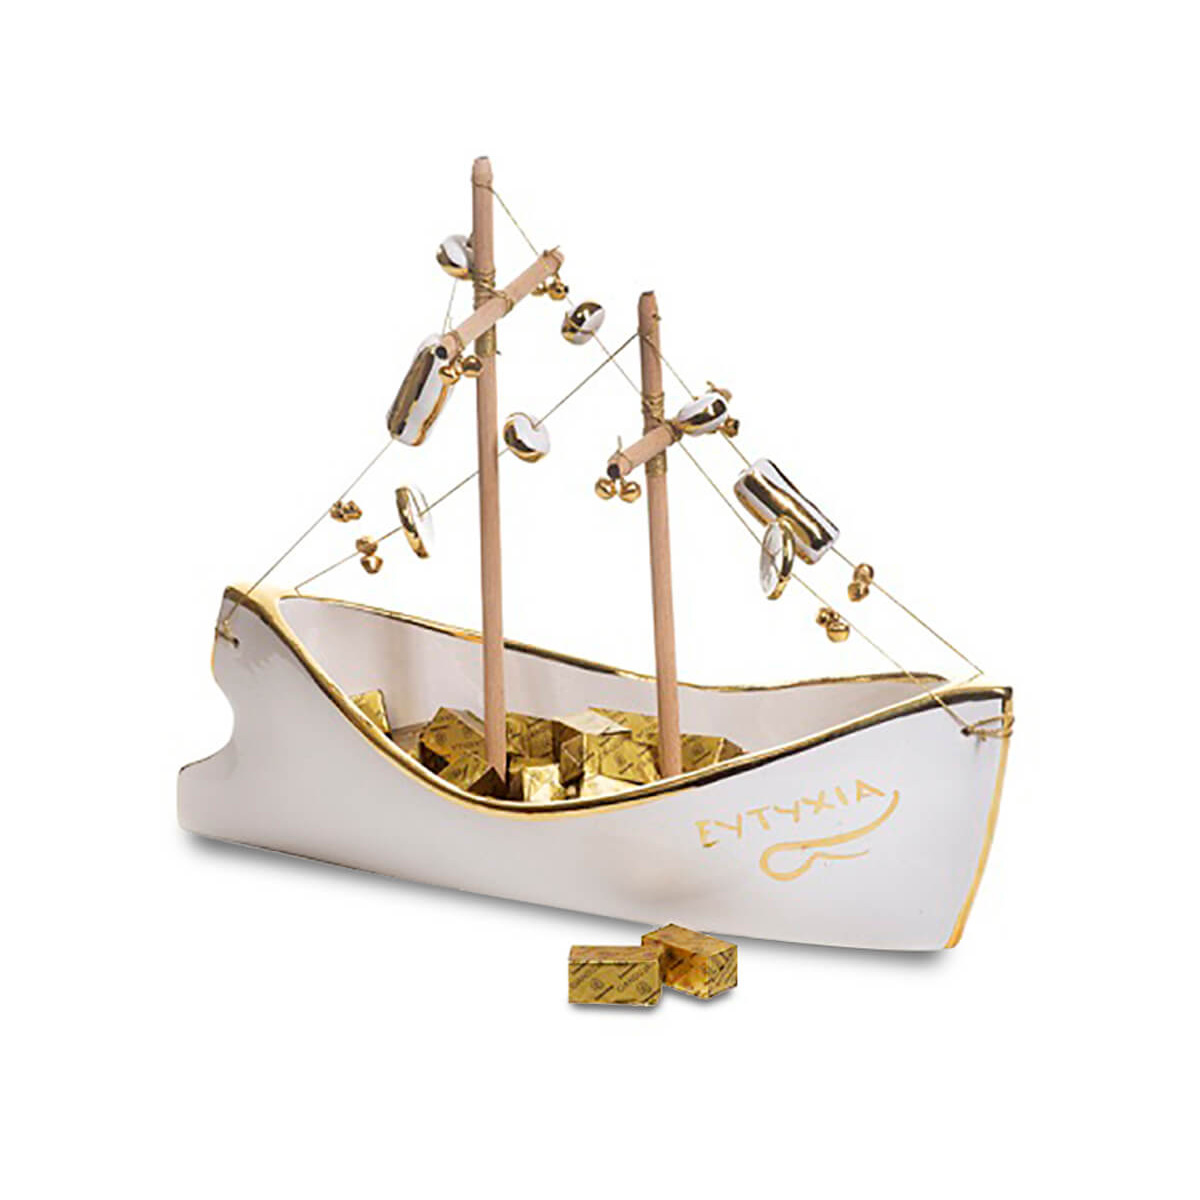 350γρ τυλιχτά σοκολατάκια Gianduja και κεραμικό καράβι με φύλλο χρυσού "Μαρία Μόρτογλου χειροποίητο" μεγάλο μέγεθος 36cm